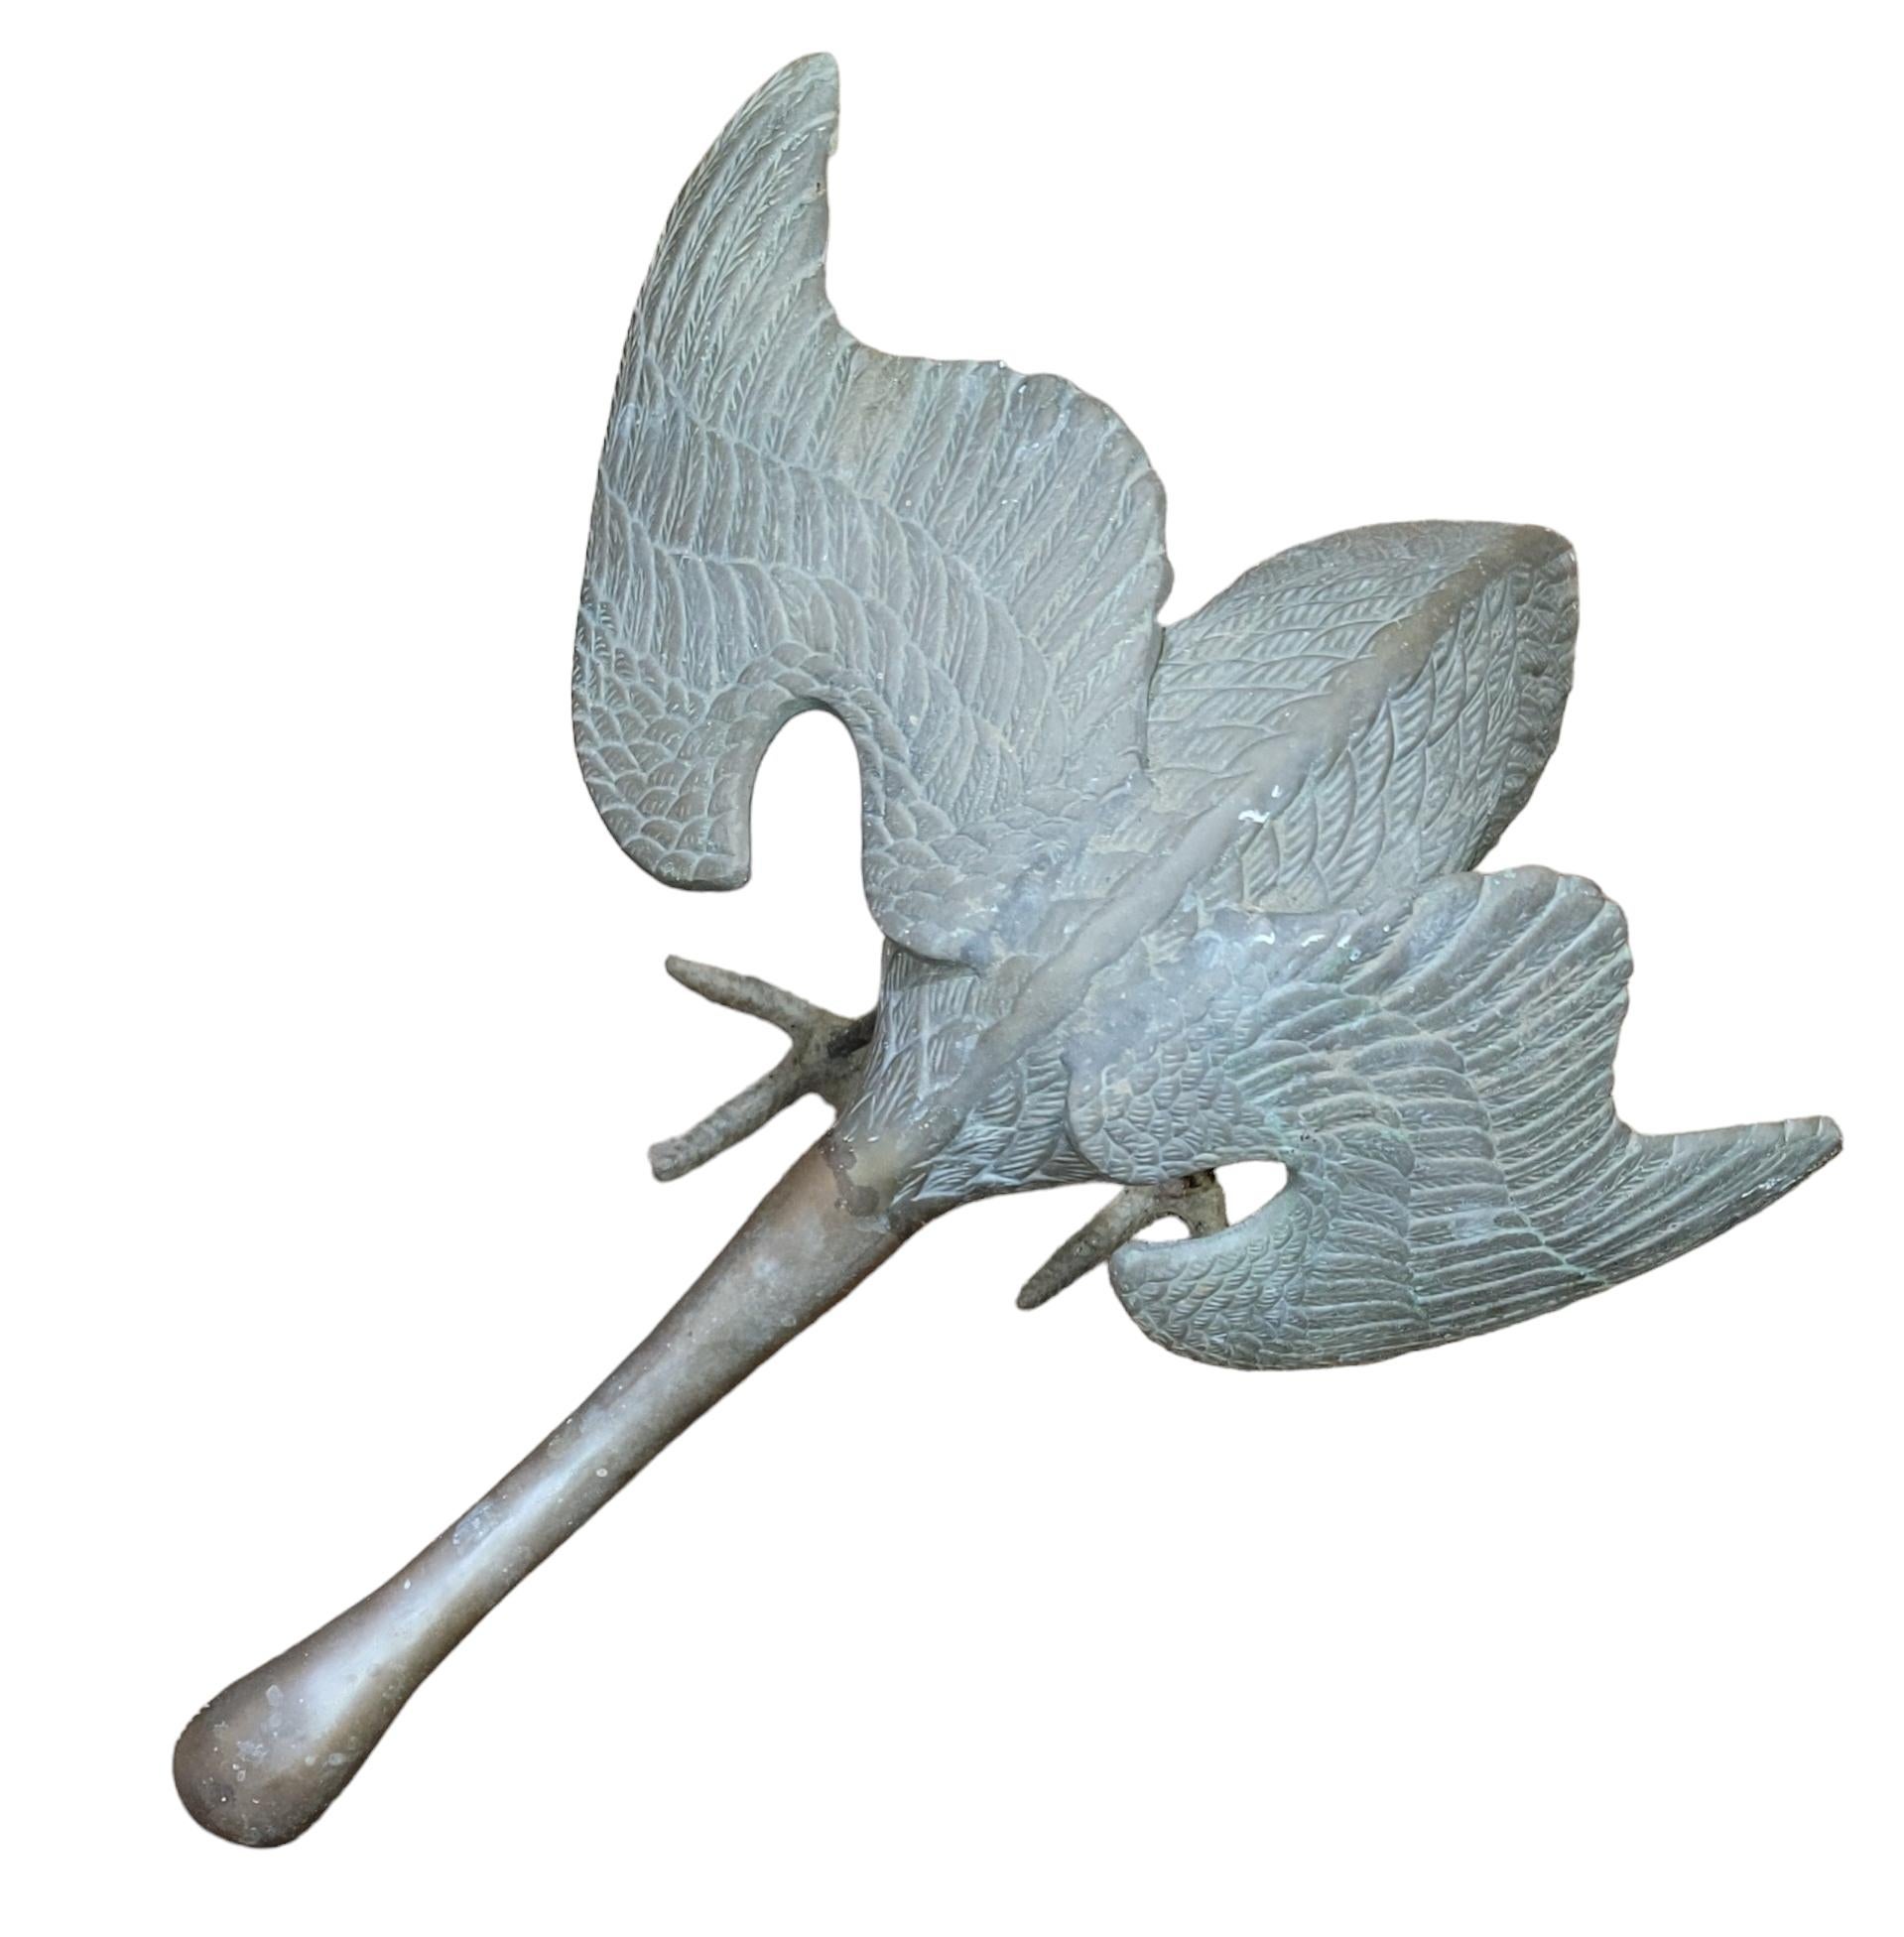 Große Bronze Vogel Garten Statue. Diese animierte Statue zeigt einen Kranich, der entweder landet oder zum Flug abhebt. Die verlängerte Flügelspannweite von 15 Zoll und der Winkel der Flügel geben der Statue ein Gefühl von Aktion. Der Hals ist